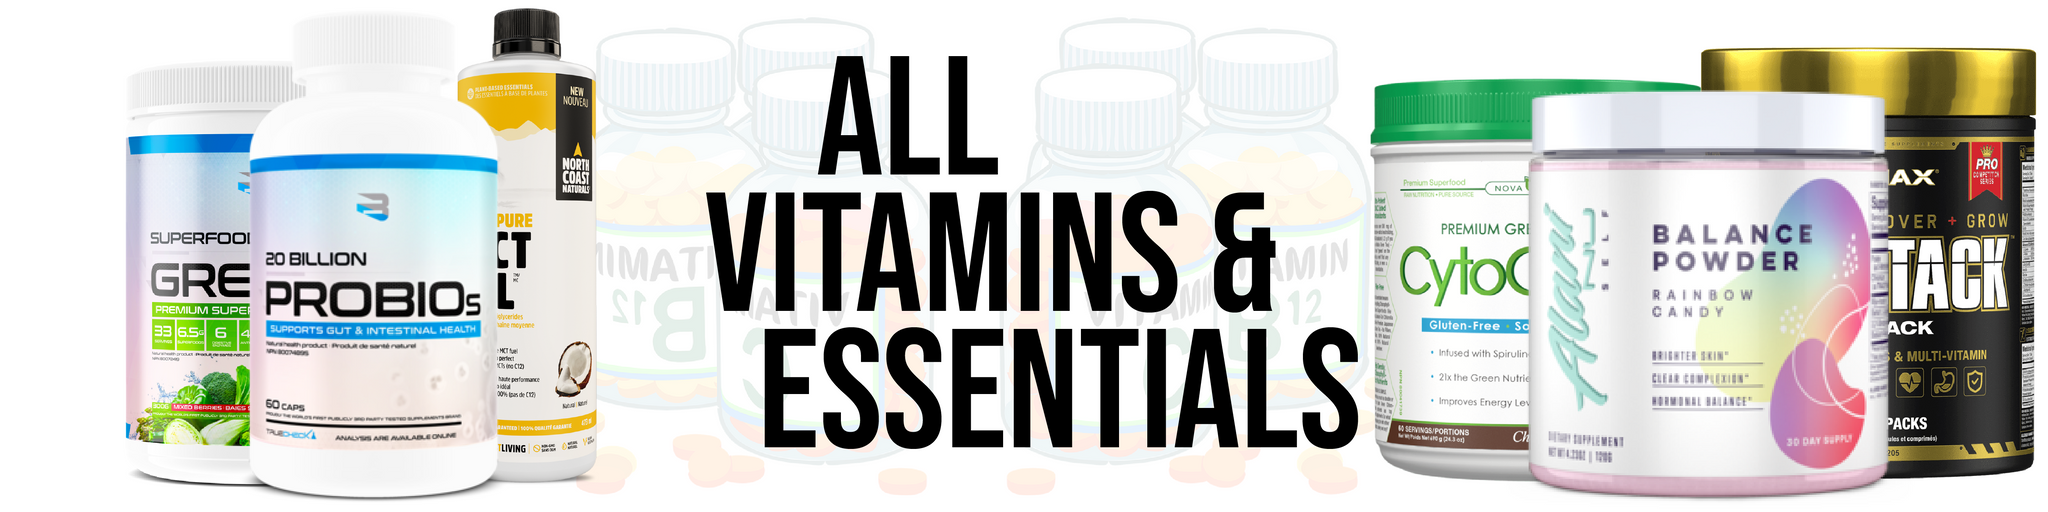 Vitamins + Essentials